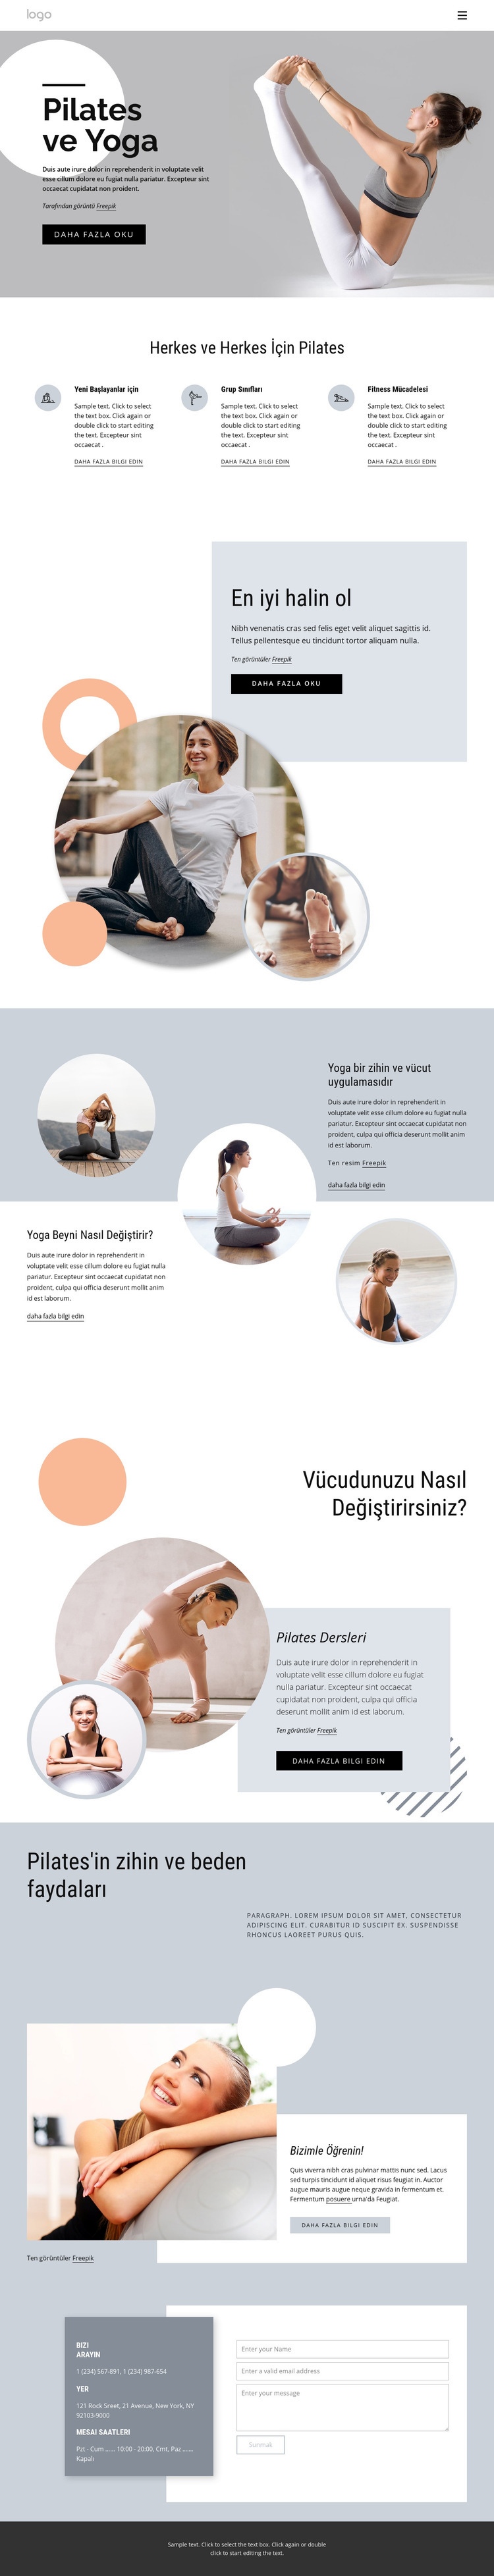 Pilates ve yoga merkezi Web sitesi tasarımı